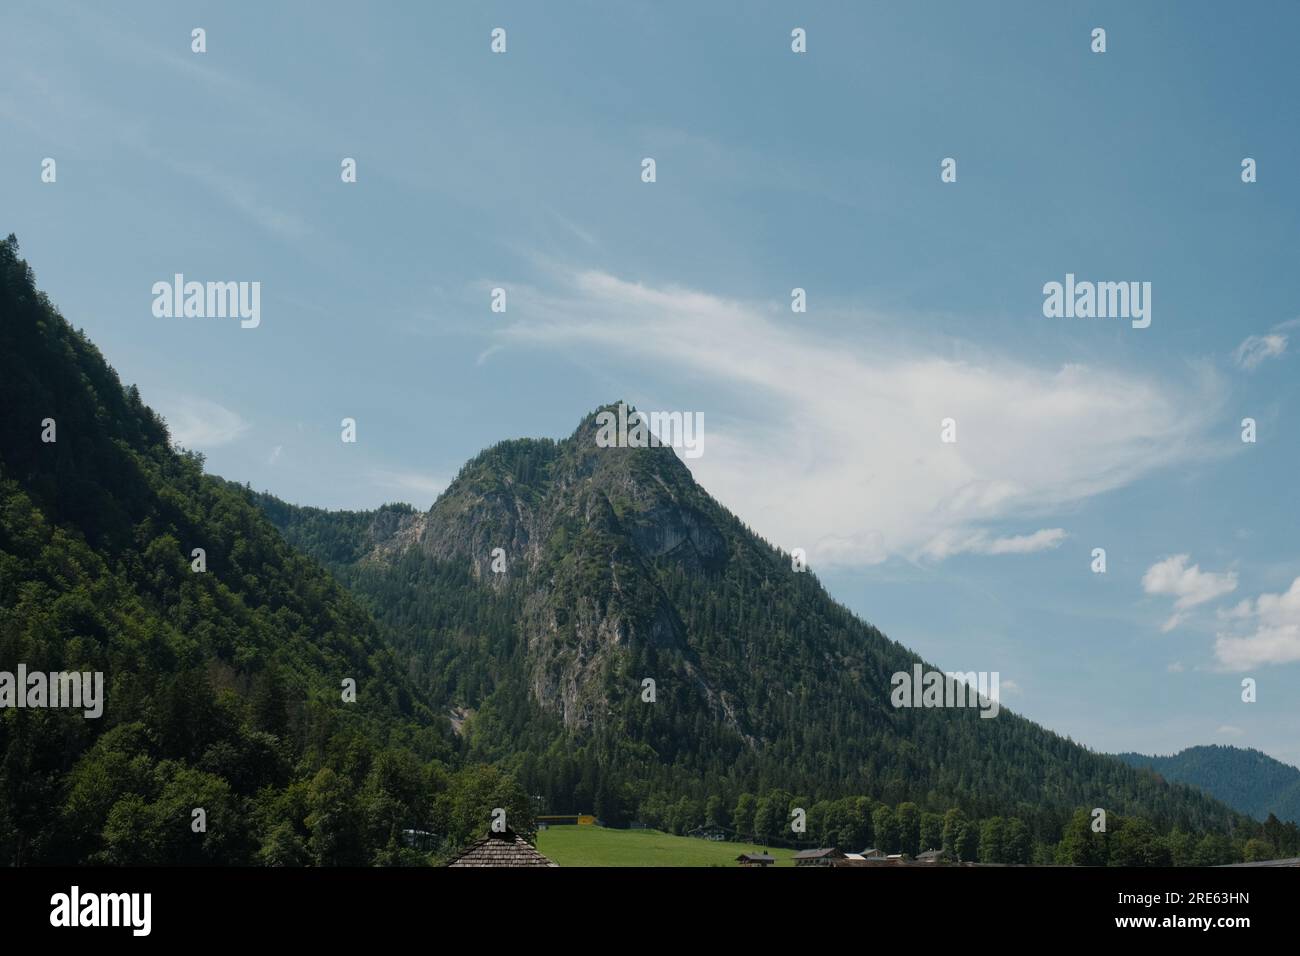 Ein Panoramablick zeigt die atemberaubende Schönheit der majestätischen Gipfel im Königssee-Nationalpark in Bayern. Stockfoto